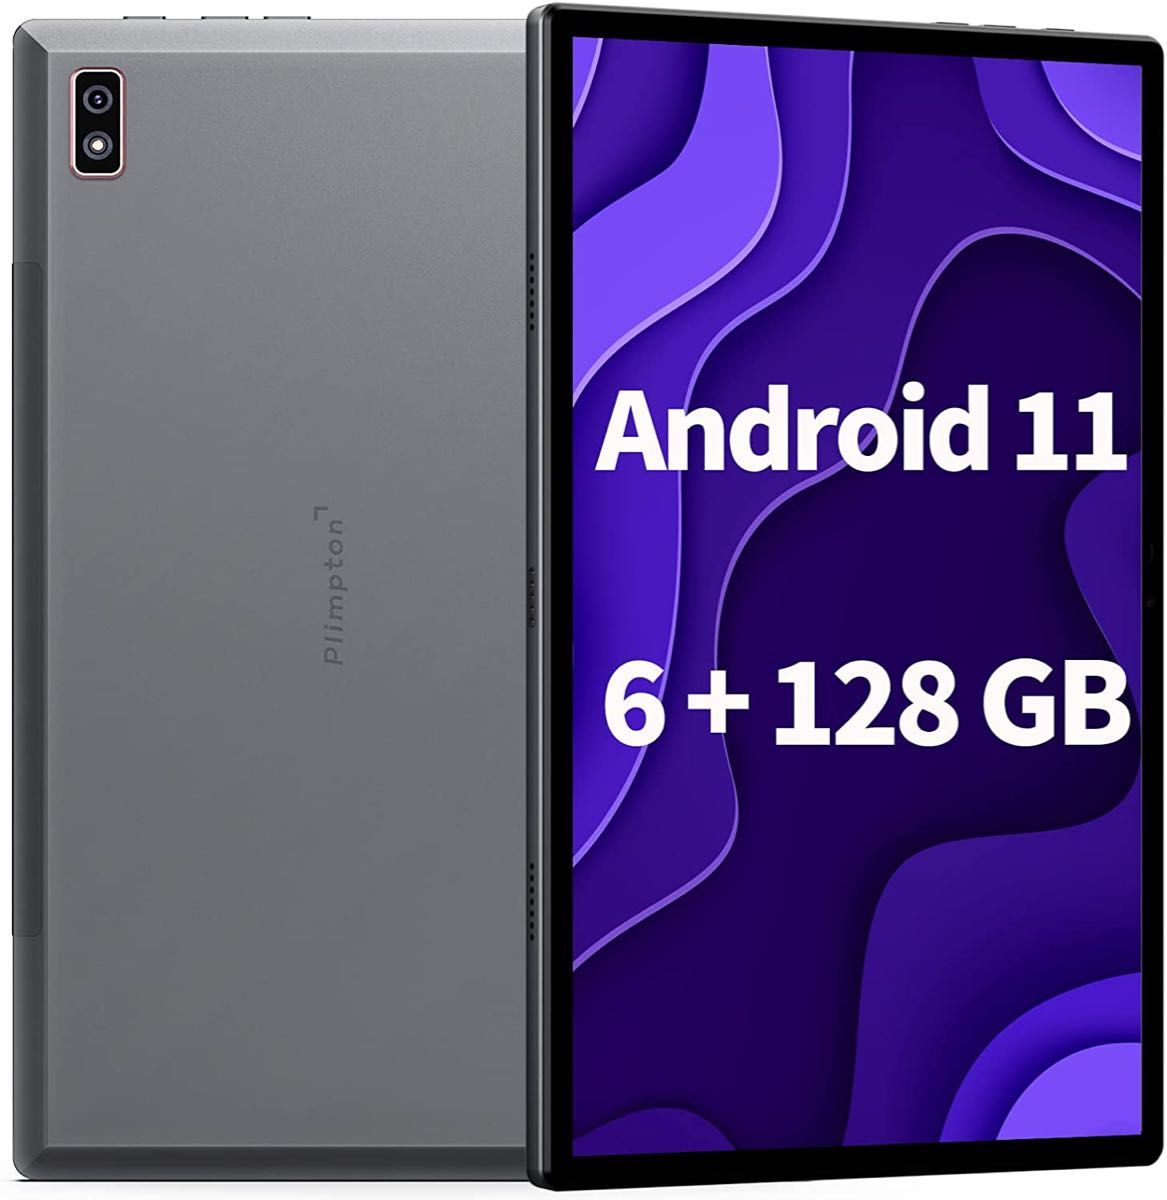 タブレット 10インチ Android 11 フルHD 6+128GB 高性能CPU T610 8コア